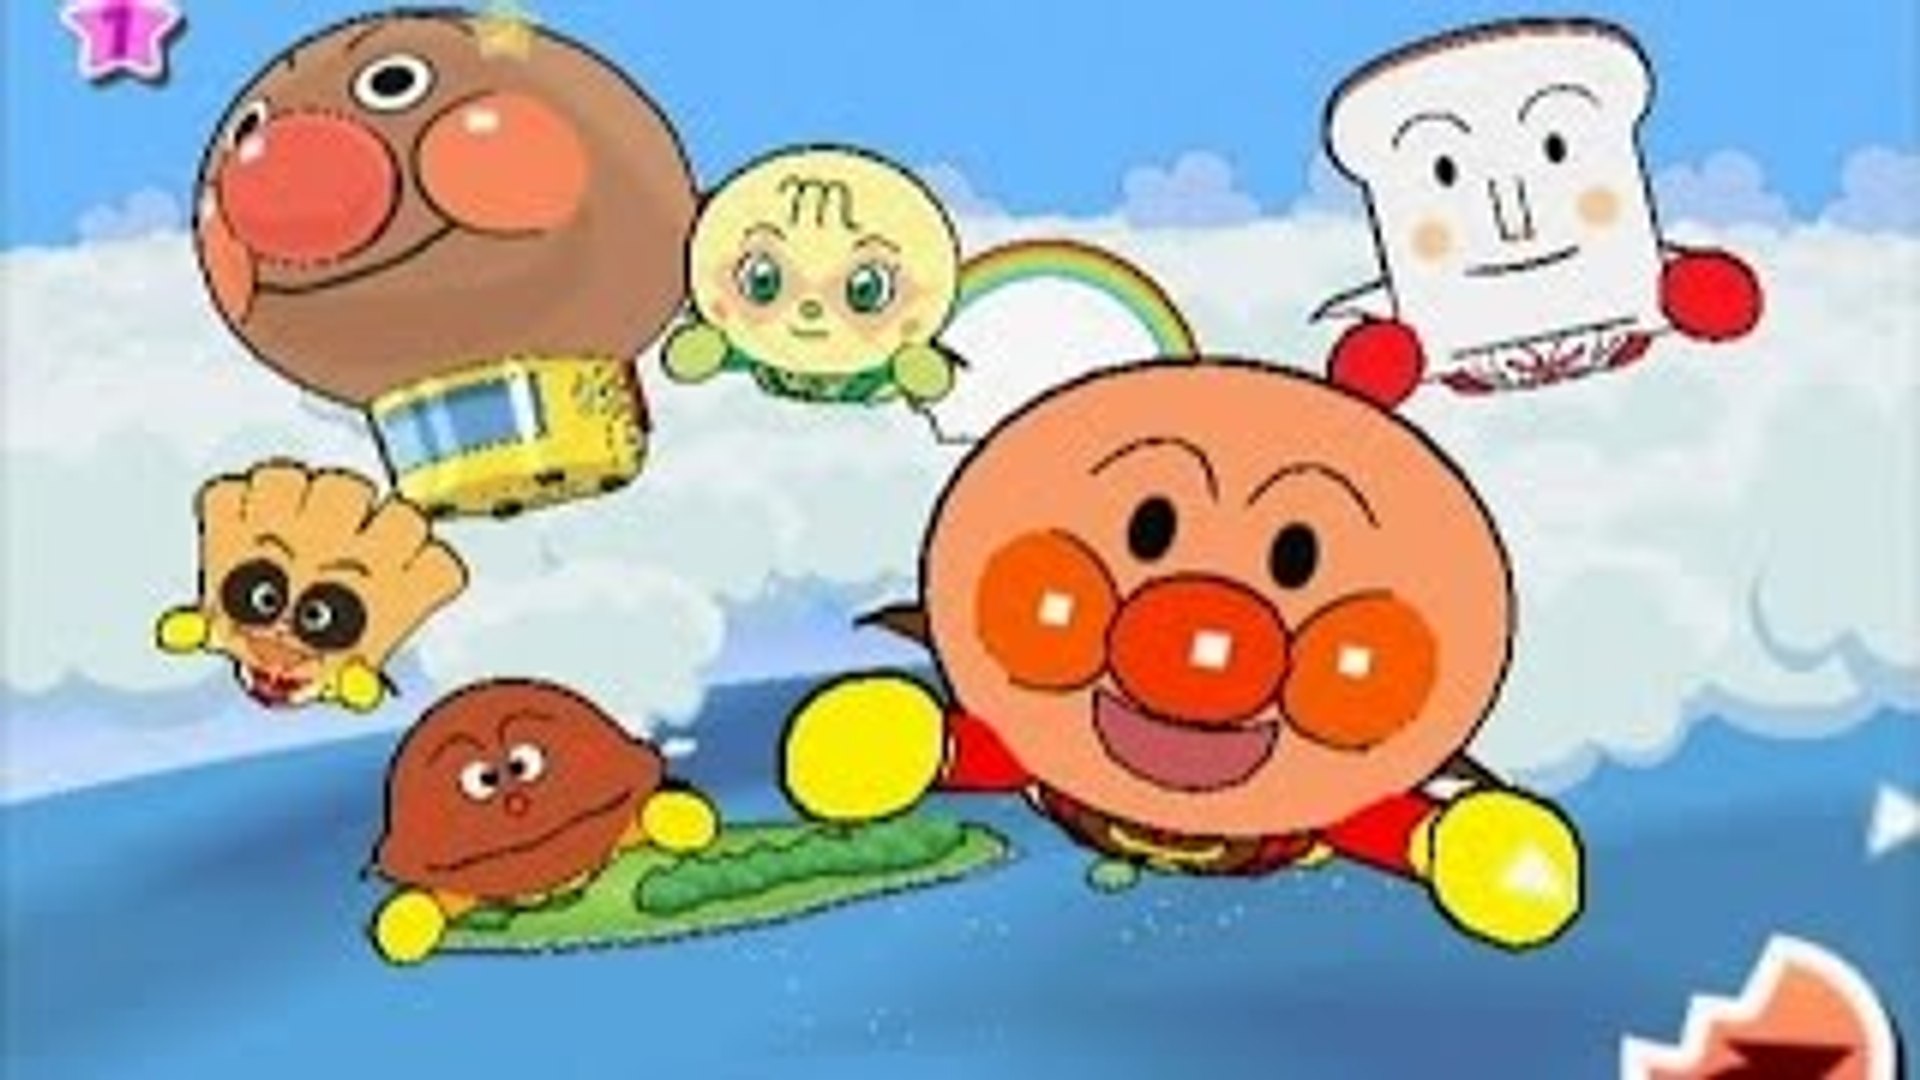 アンパンマン アニメ 1 それいけ アンパンマン Wii Anpanman Game P Dailymotion Video